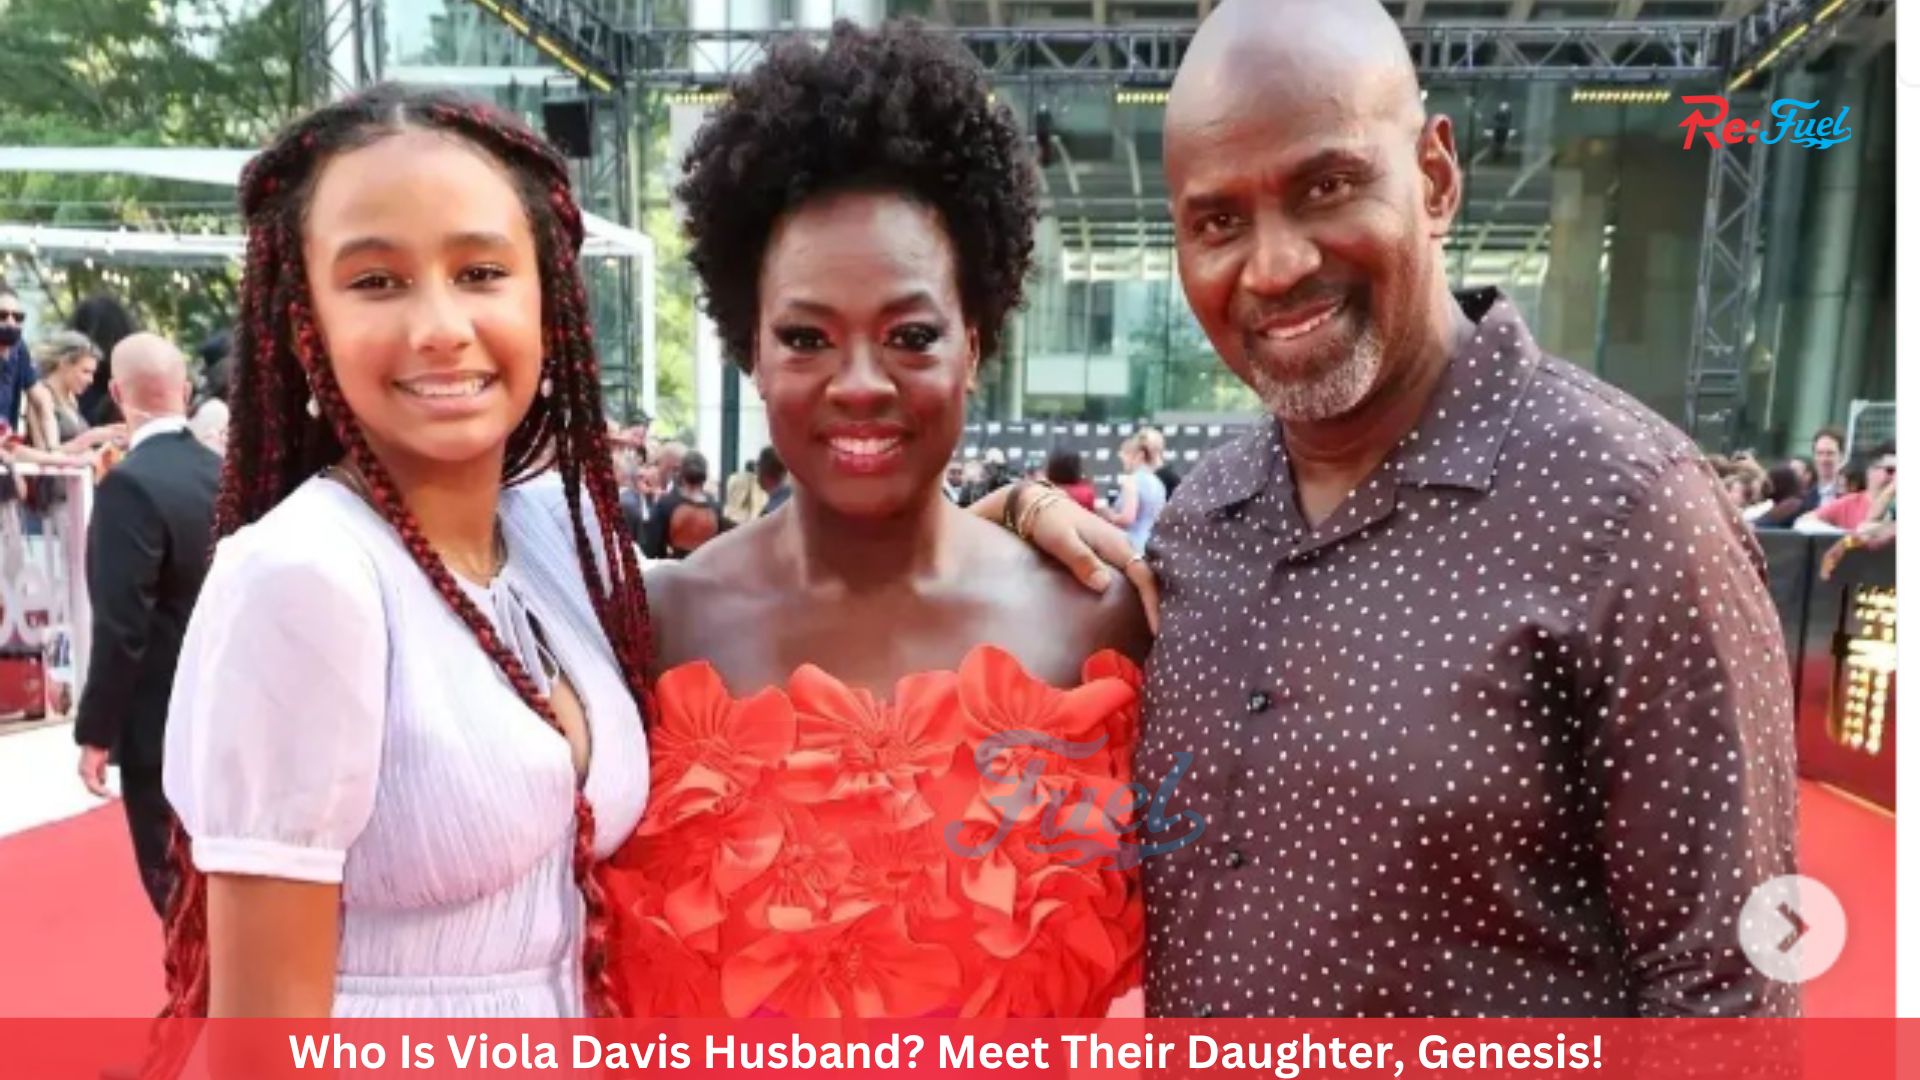 Who Is Viola Davis Husband? Meet Their Daughter, Genesis!